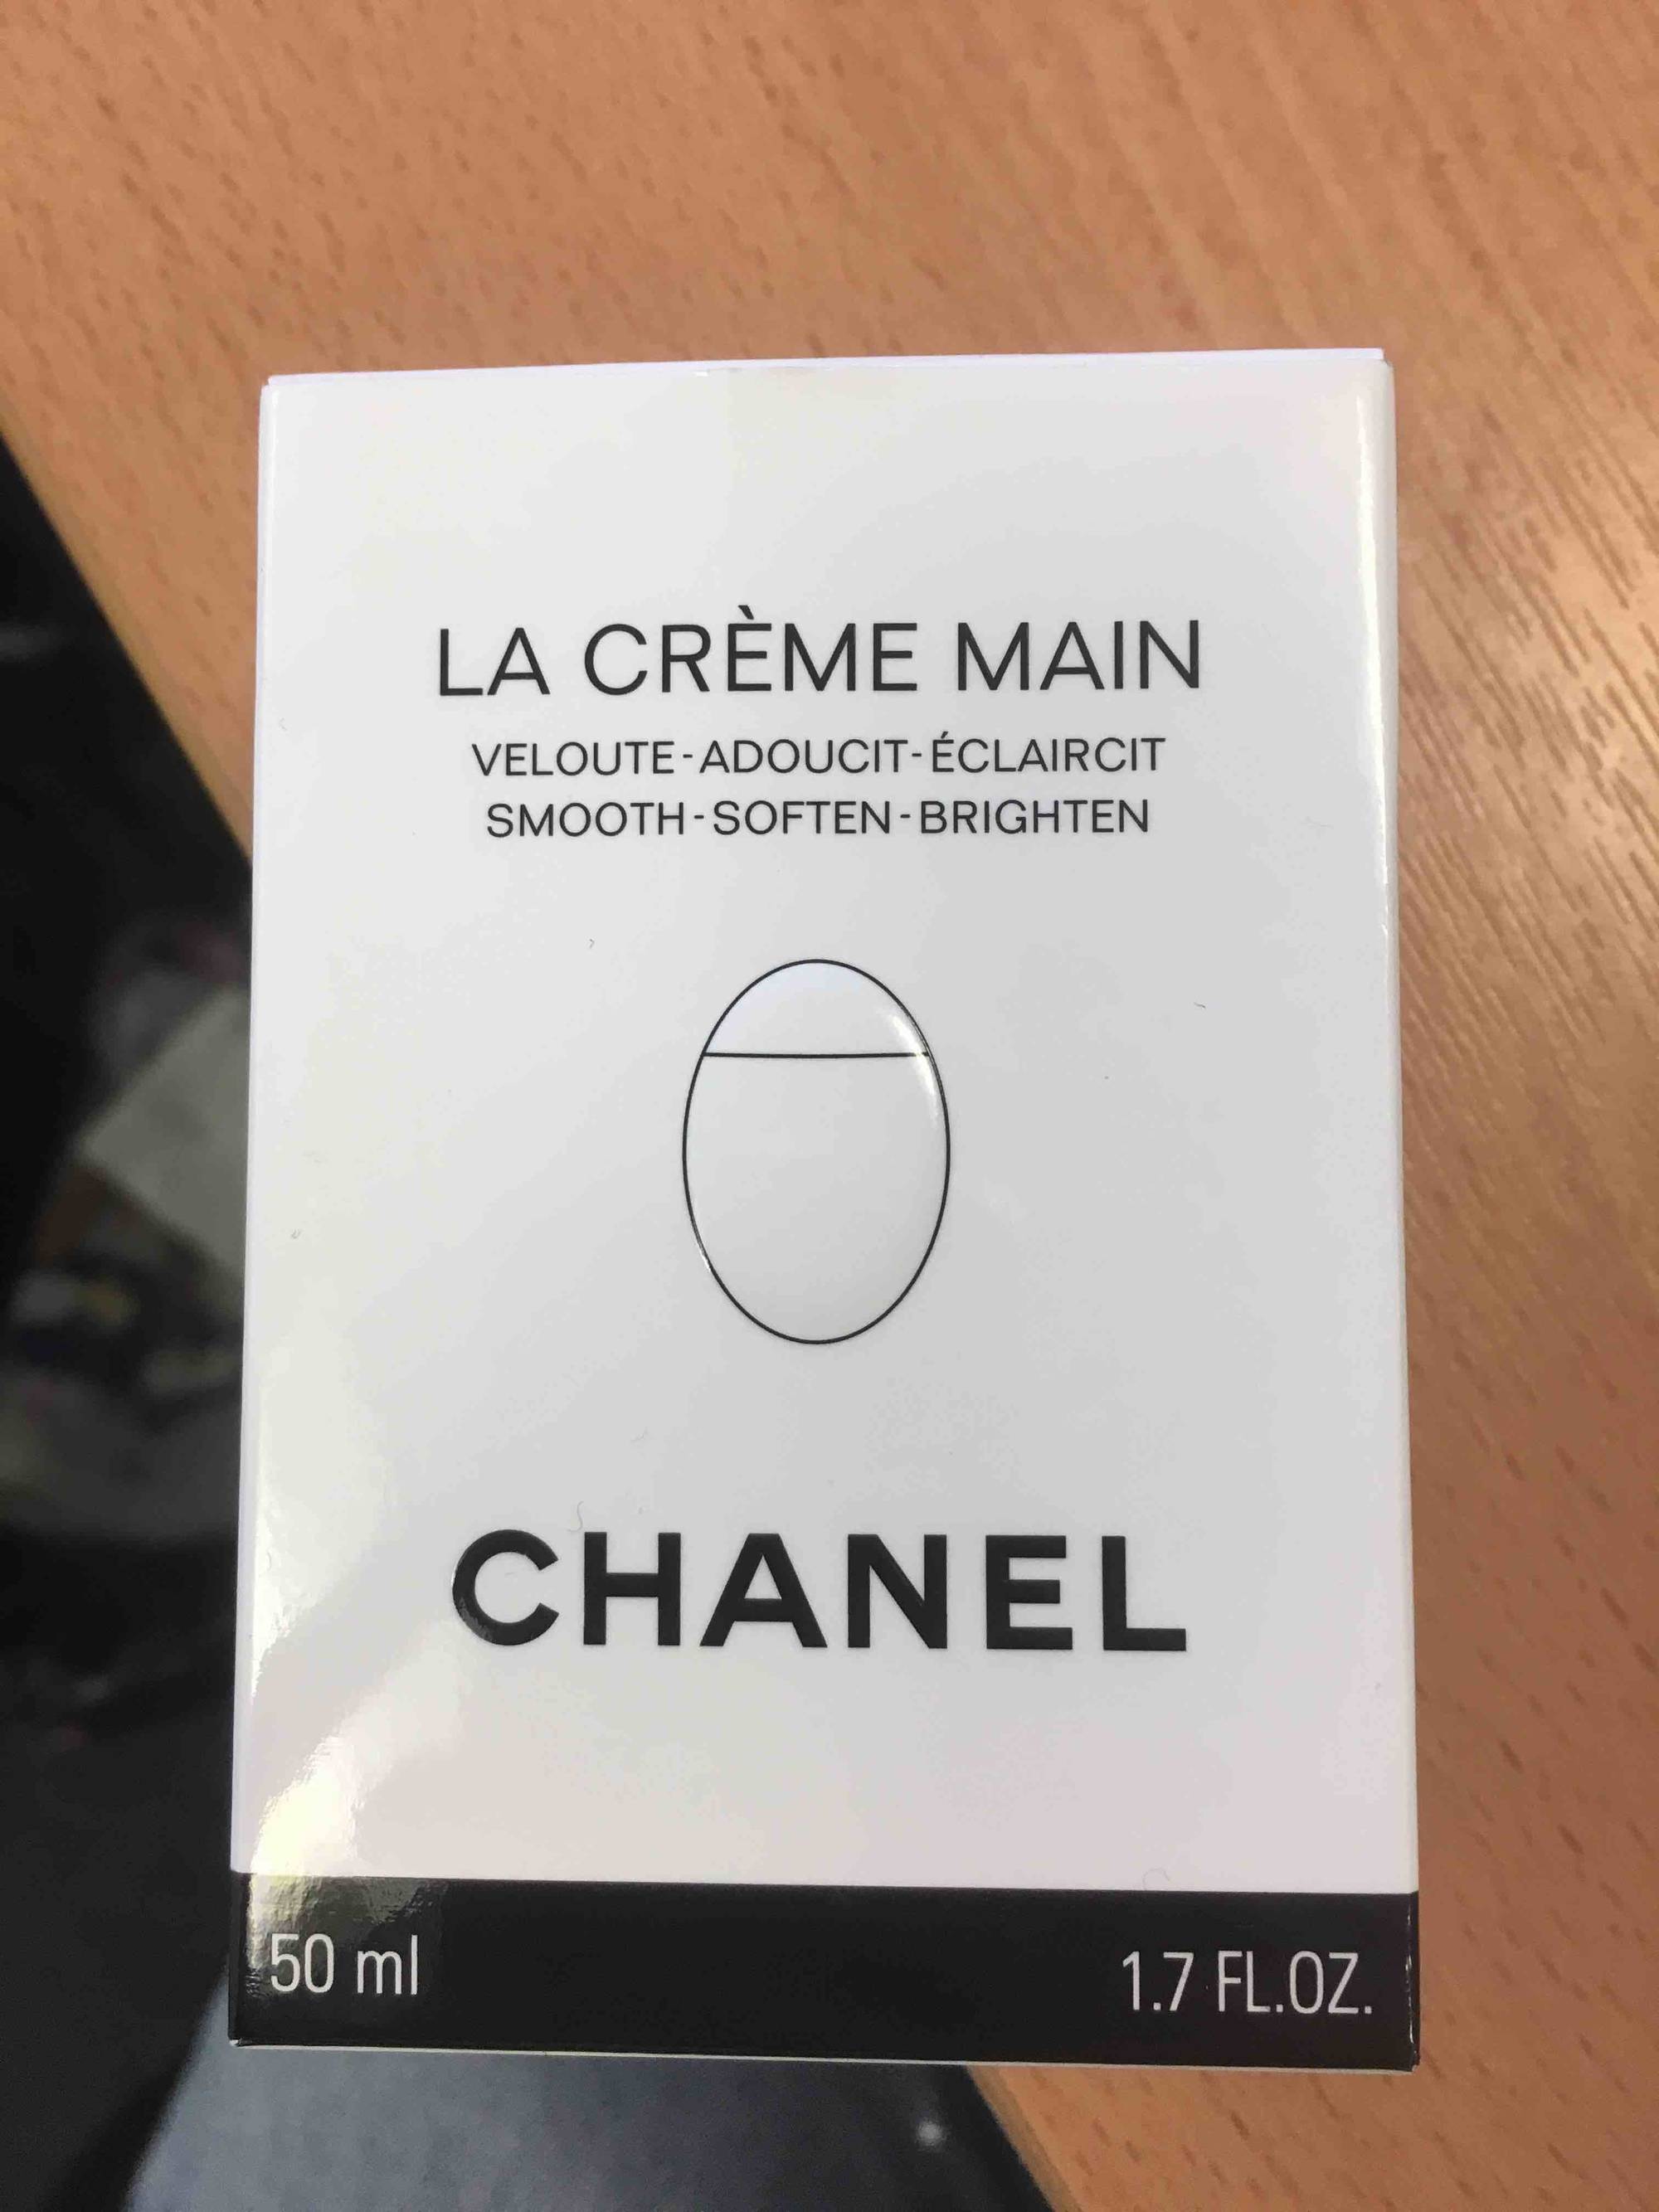 CHANEL - La crème main - Veloute, adoucit, éclaircit